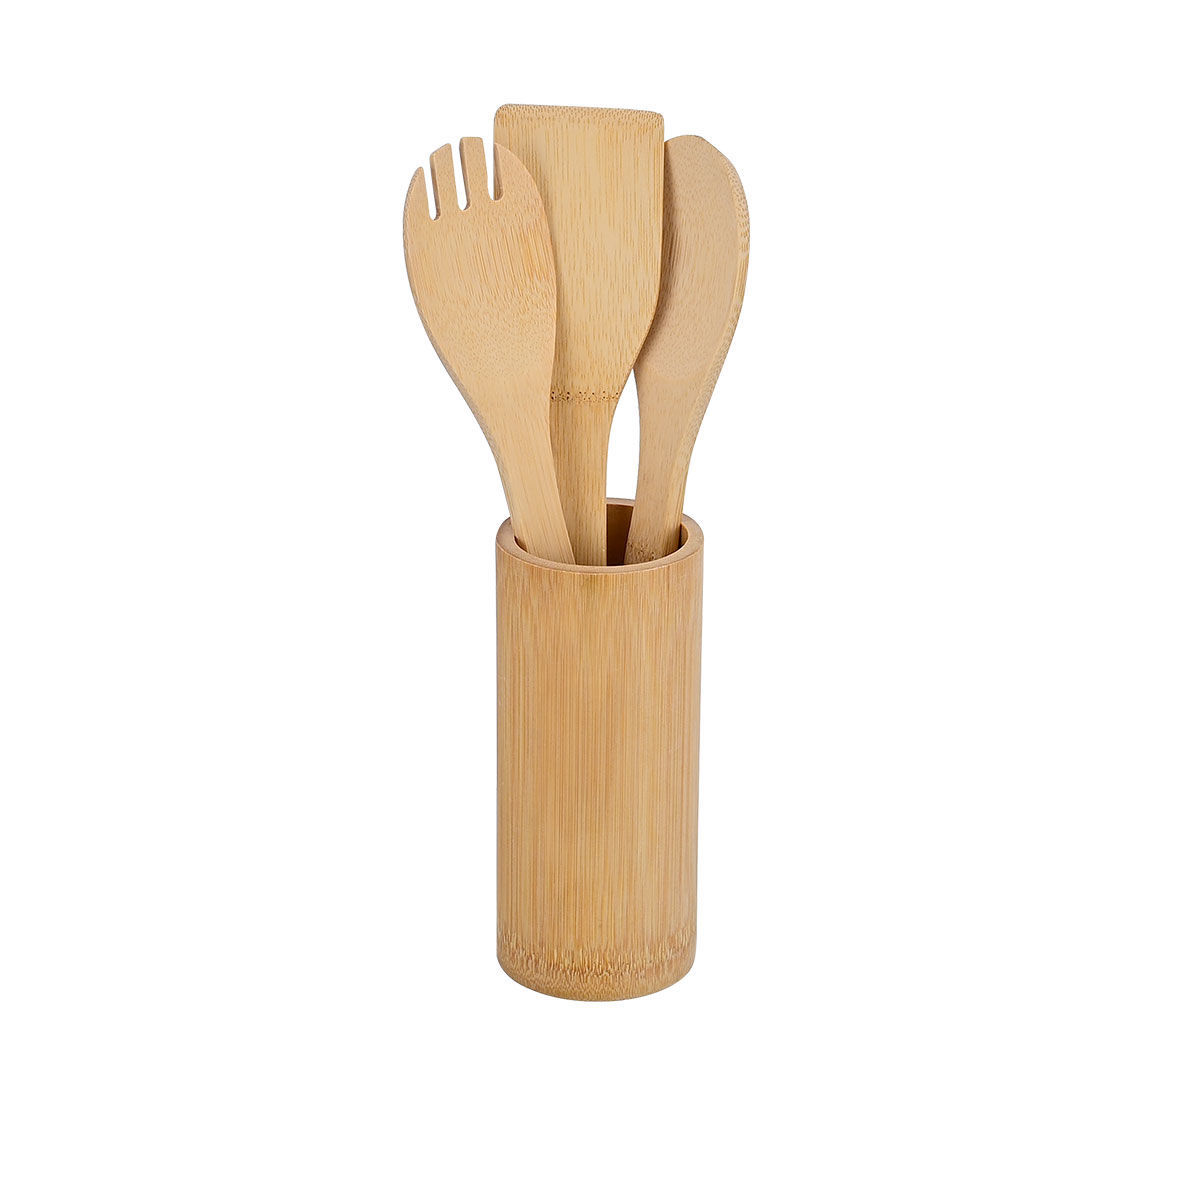 Εργαλεία Μαγειρικής Σετ 4τμχ Με Θήκη Bamboo Essentials Estia 02-18191 (Υλικό: Bamboo) - estia - 02-18191